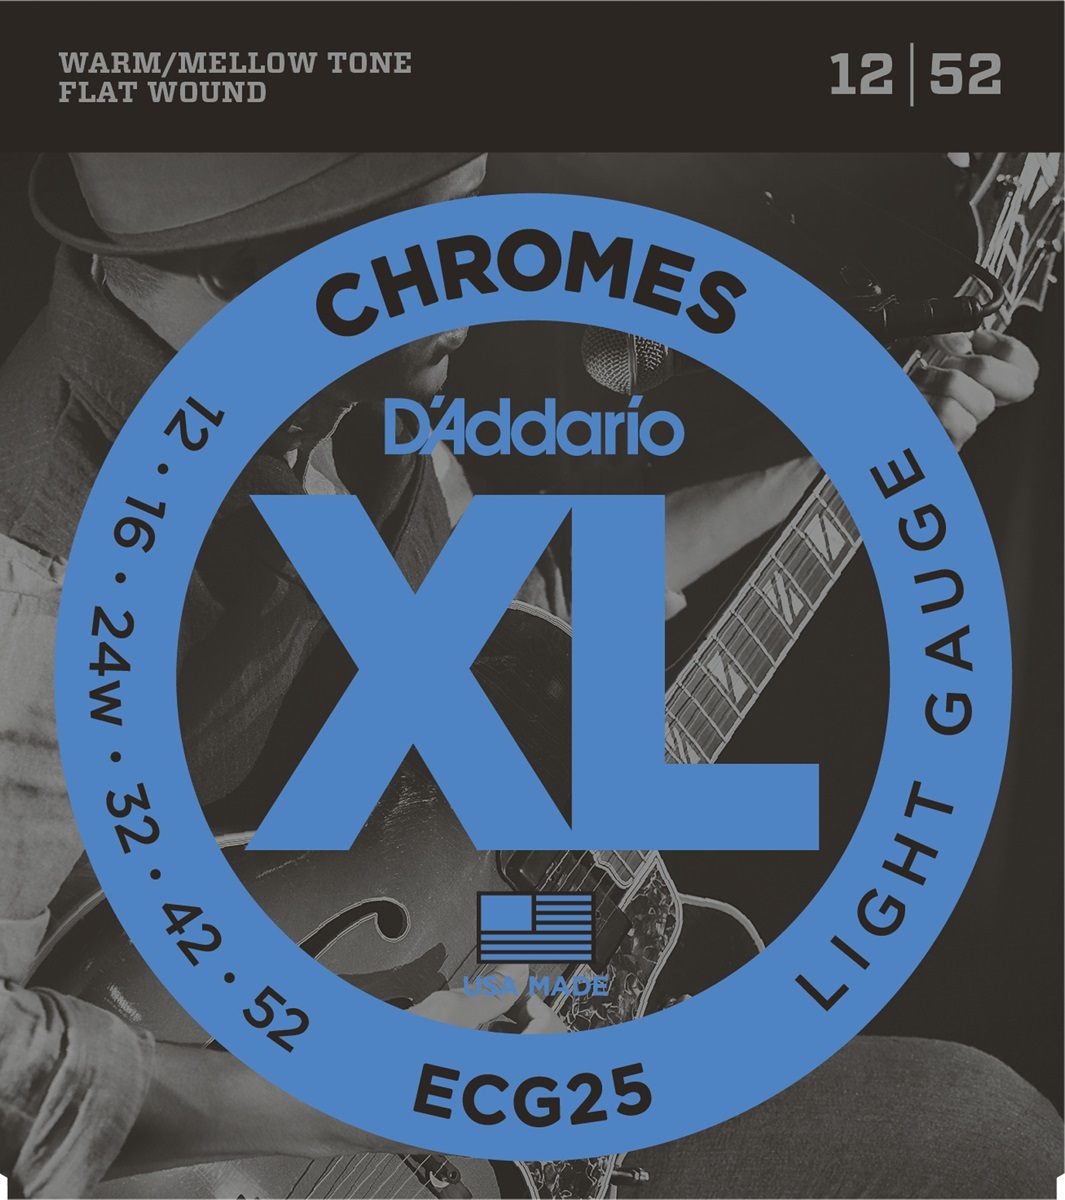 D'addario Jeu De 6 Cordes Guit. Elec. 6c Chromes Jazz 012.052 Ecg25 - Electric guitar strings - Main picture